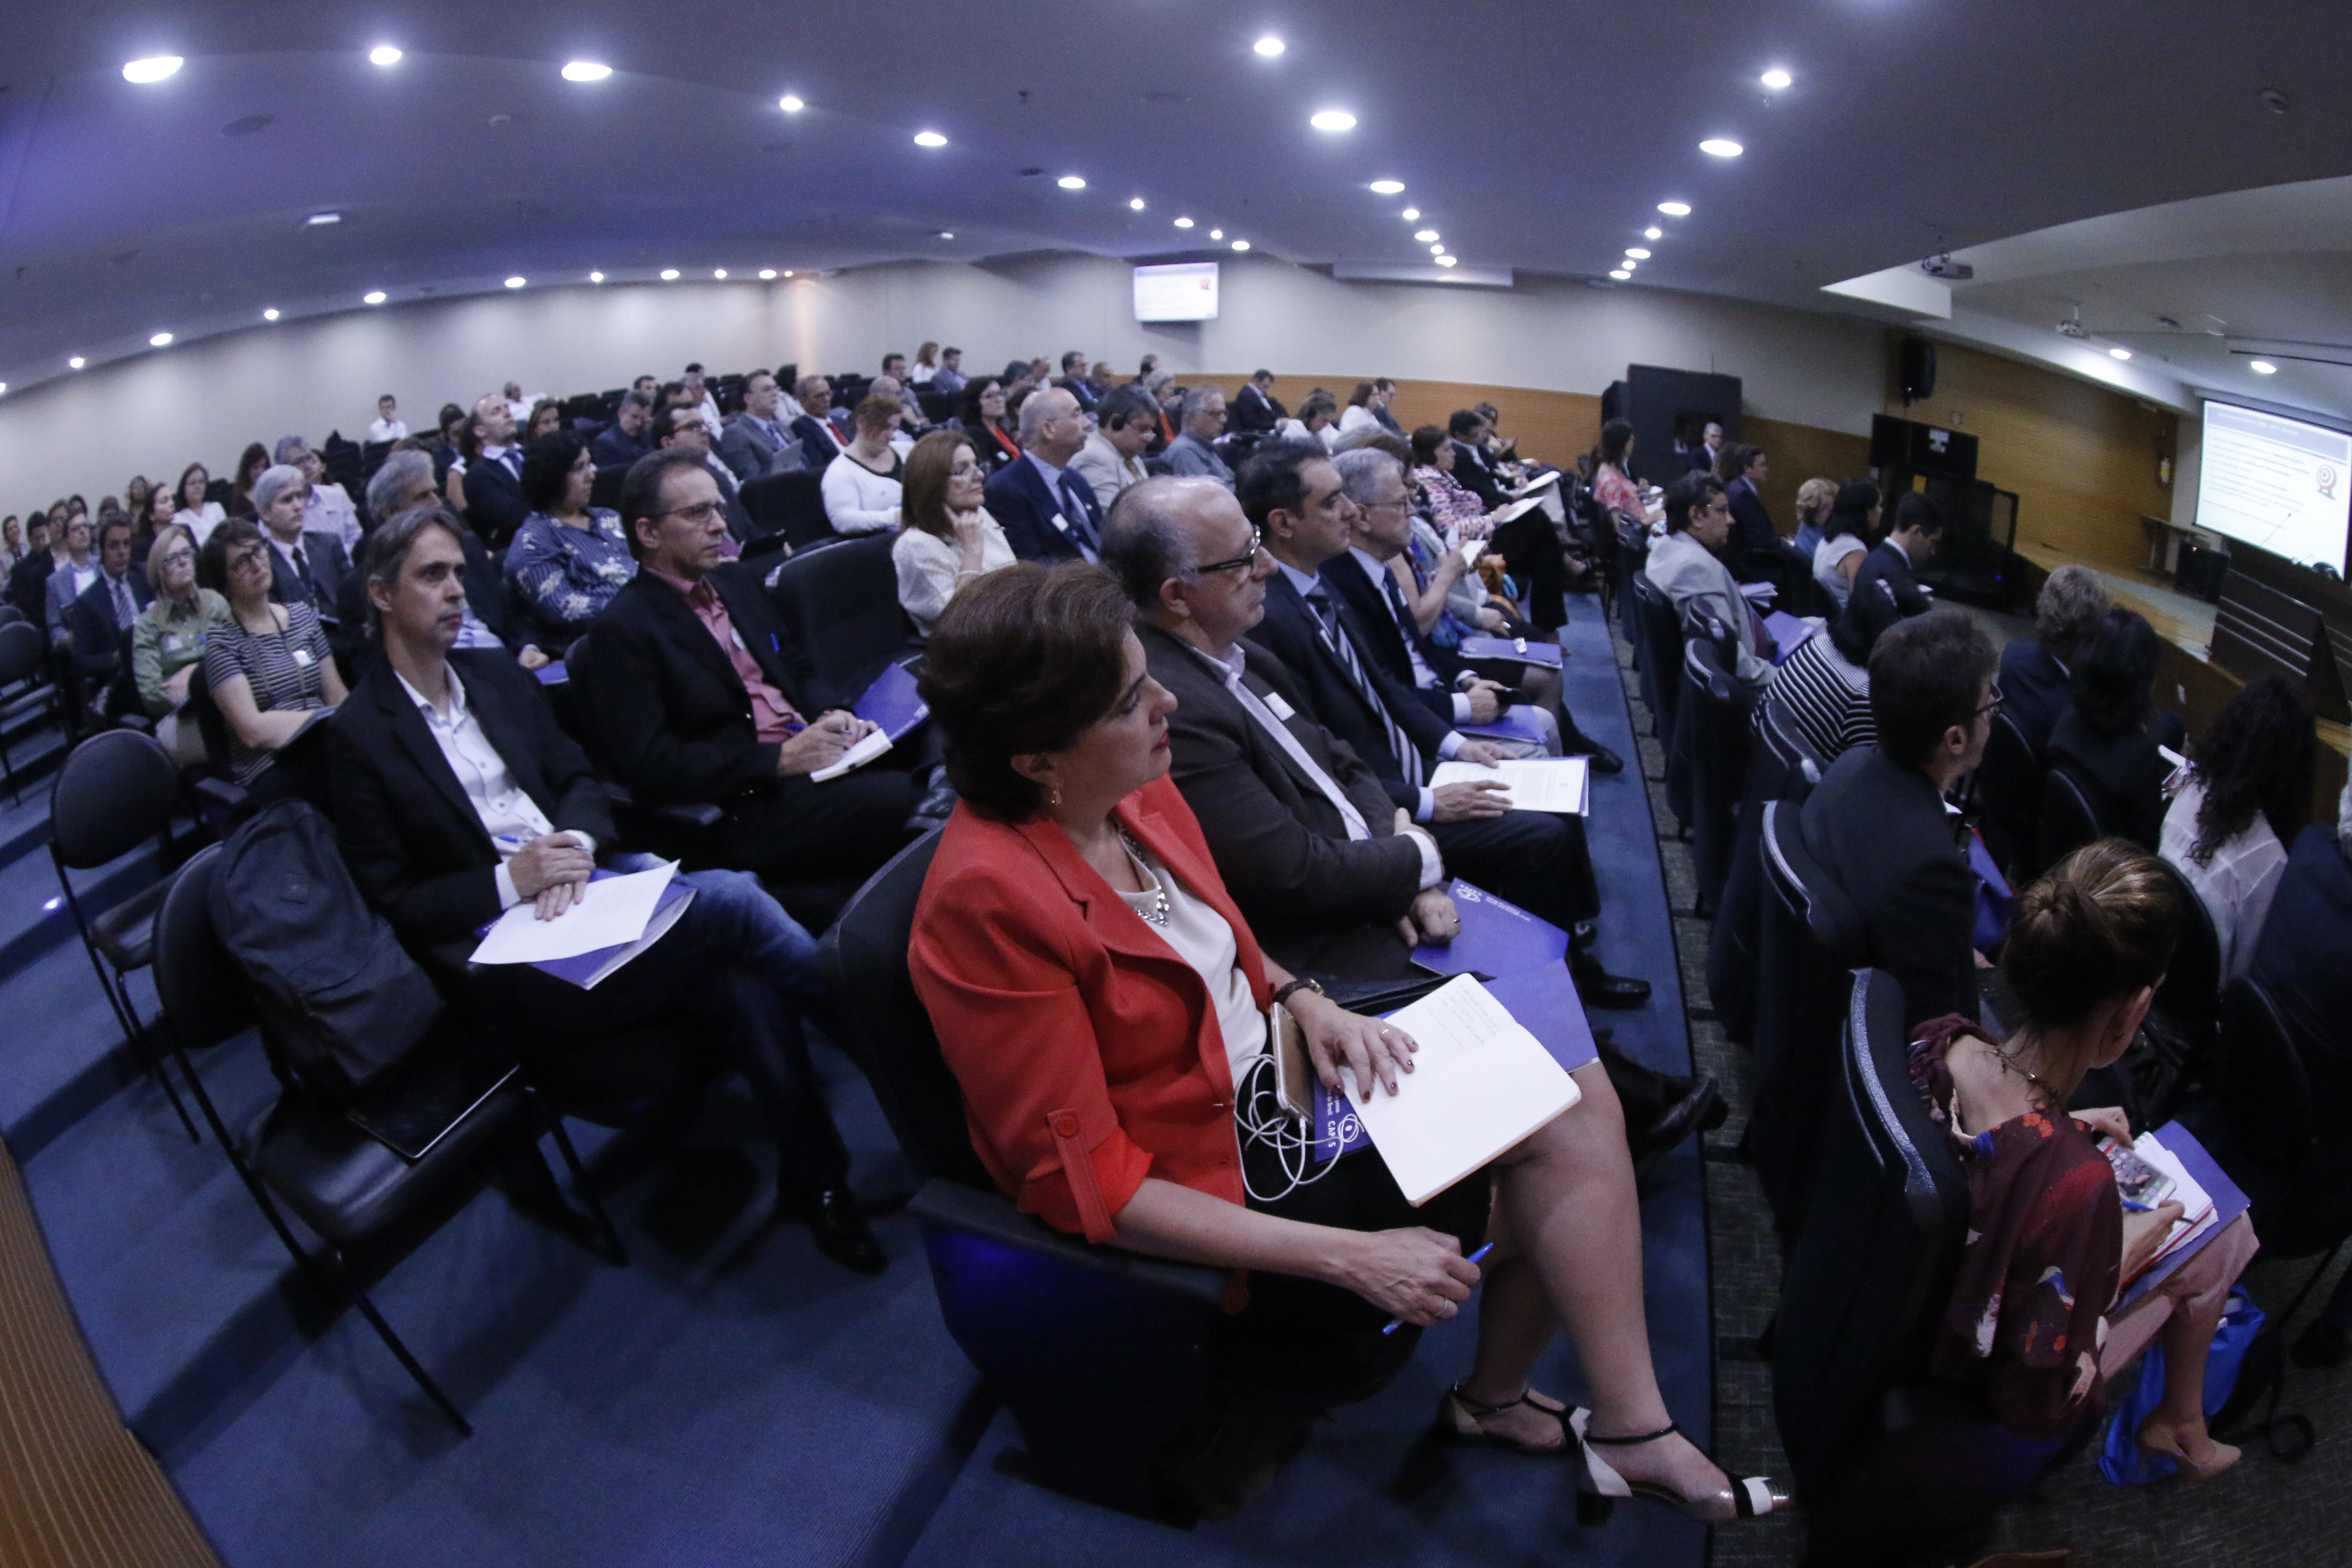 Ca. 90 Vertreter brasilianischer Universitäten und Forschungseinrichtungen nahmen am Symposium teil